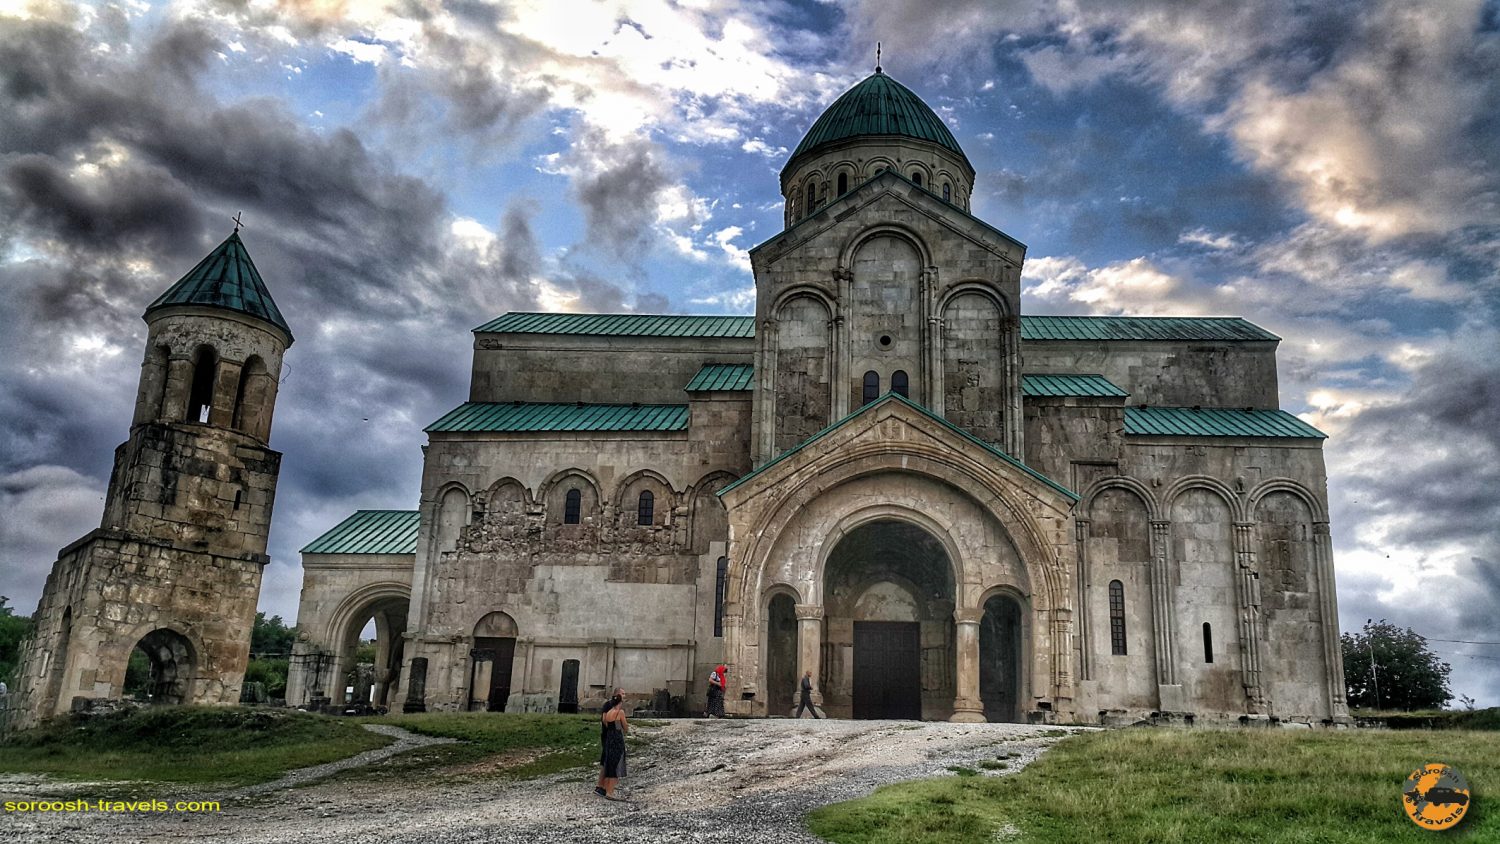 کلیسای باگراتی در شهر کوتایسی، گرجستان - تابستان 1398 2019